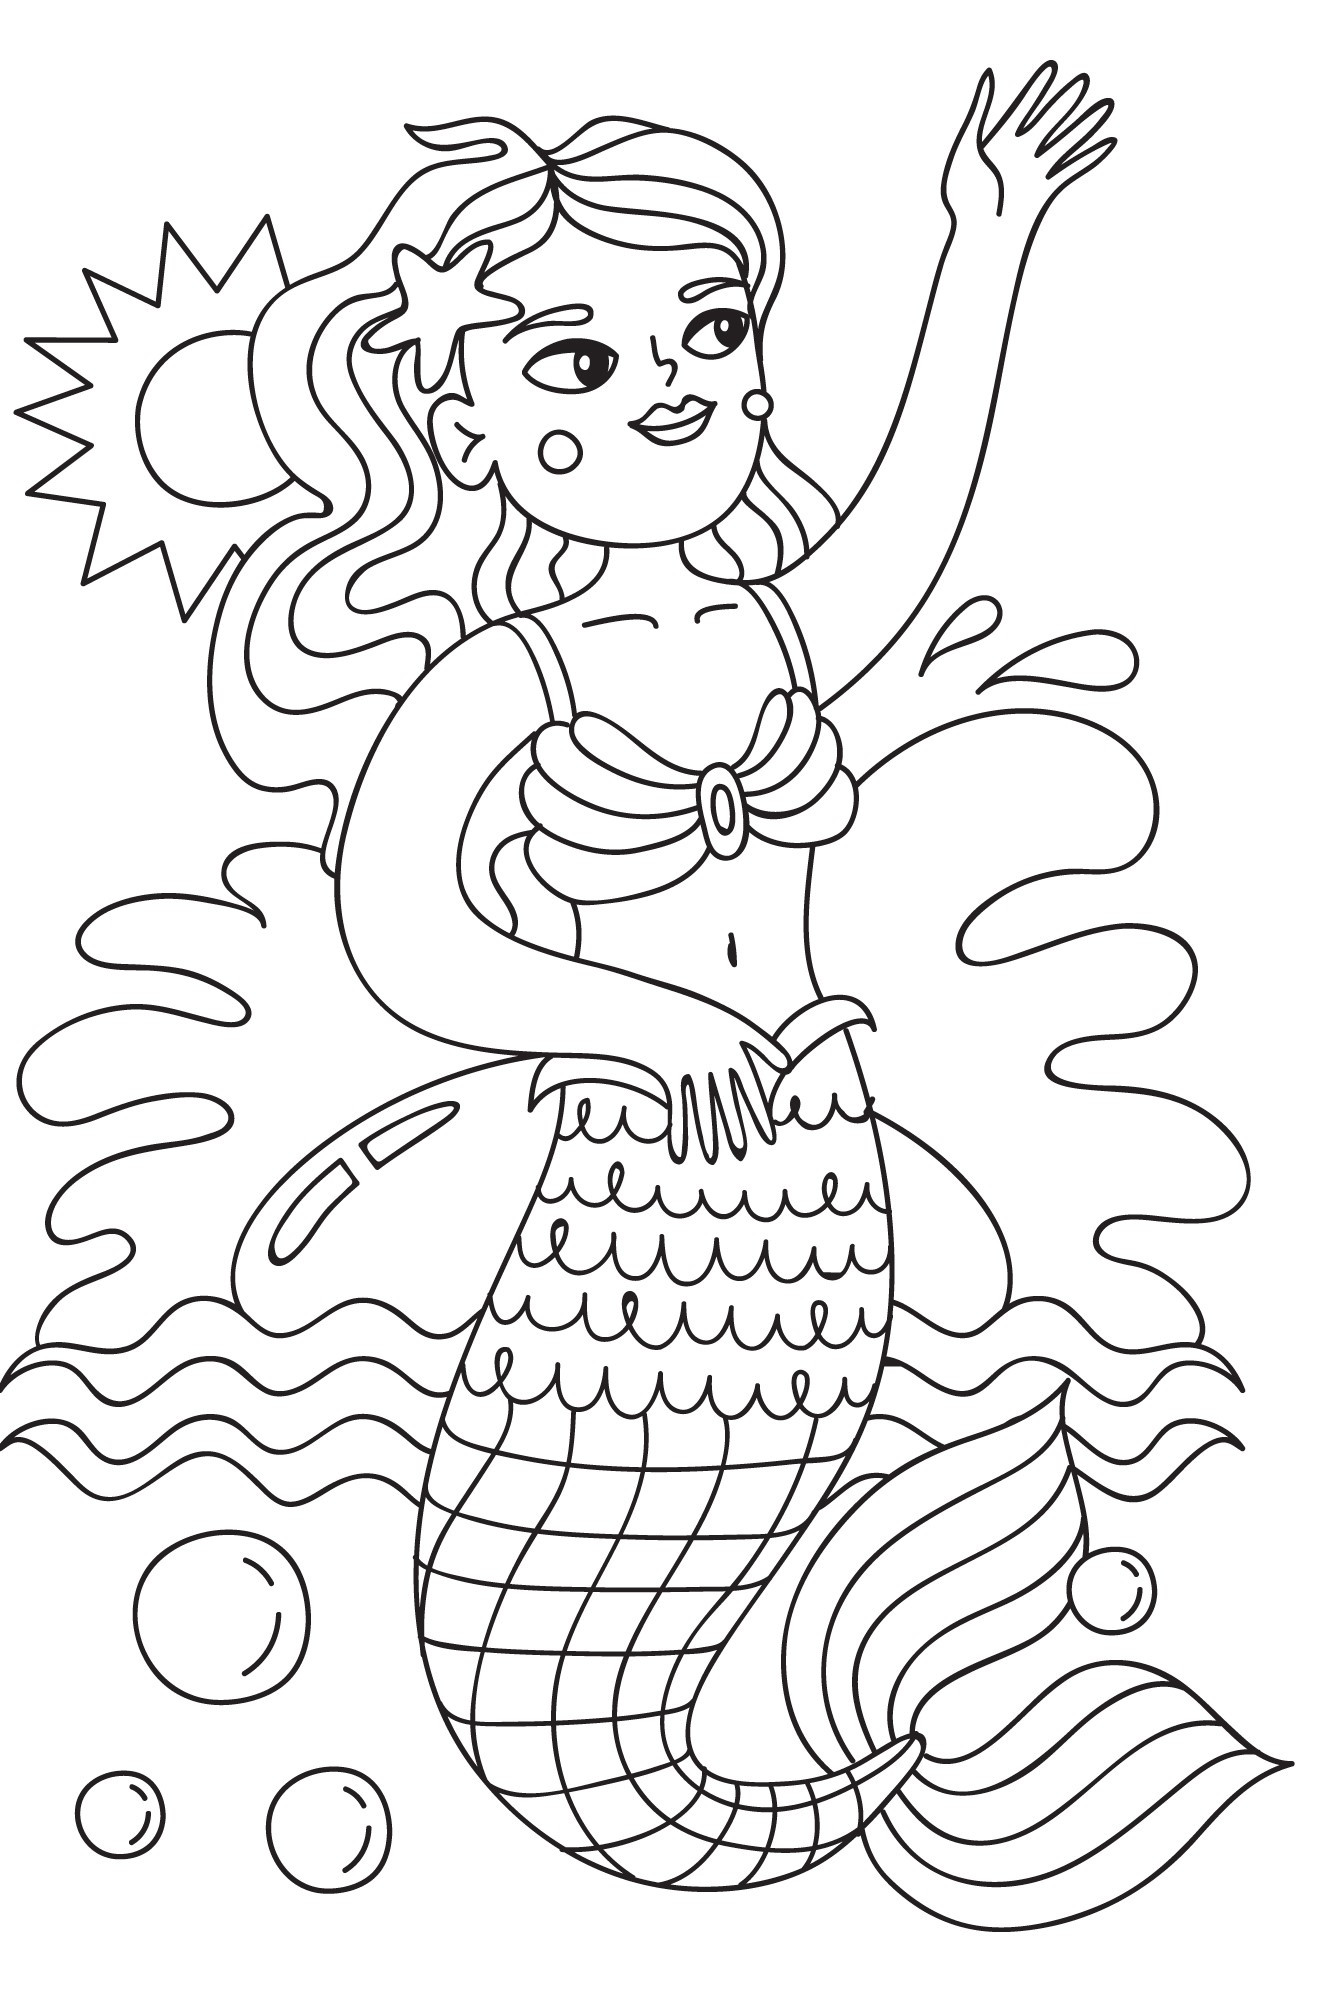 Раскраска для детей: русалка в море машет рукой